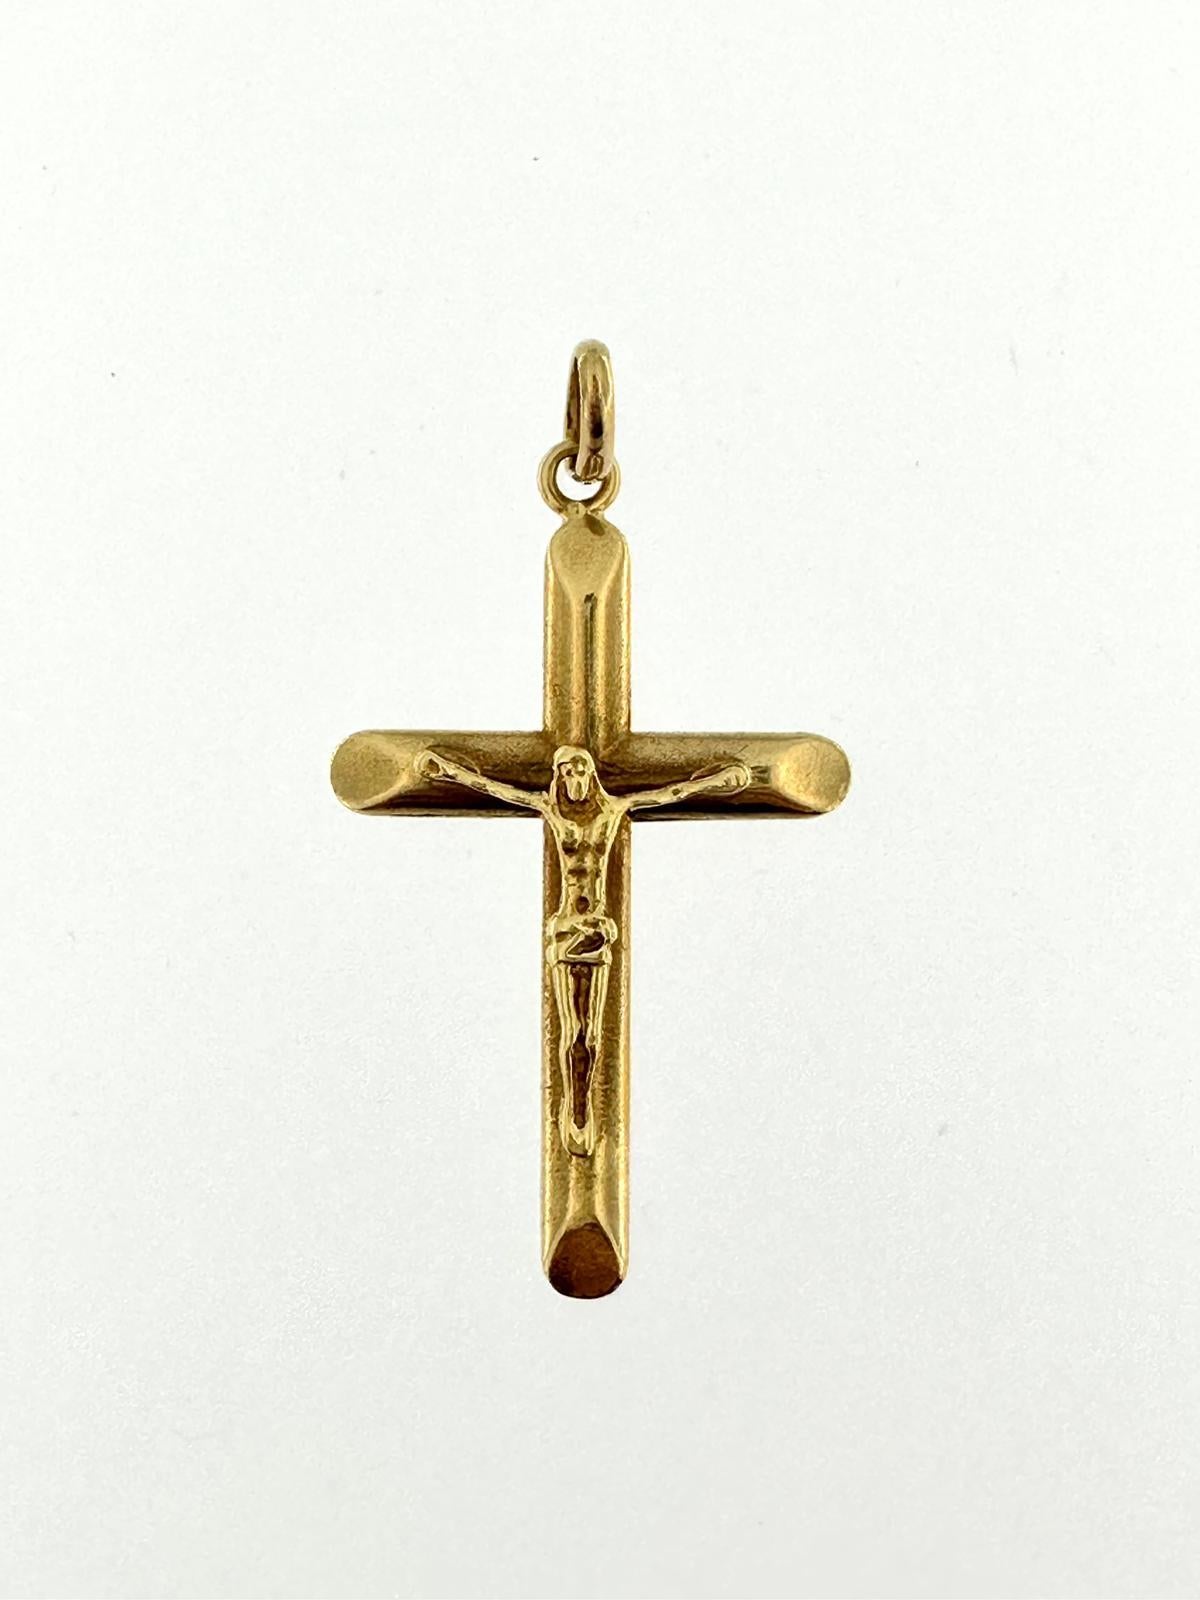 Ce magnifique crucifix vintage est en or jaune 18 carats et a été fabriqué en Italie dans les années 90. Le terme crucifix désigne une croix sur laquelle figure Jésus. La particularité de ce crucifix réside avant tout dans le travail en relief